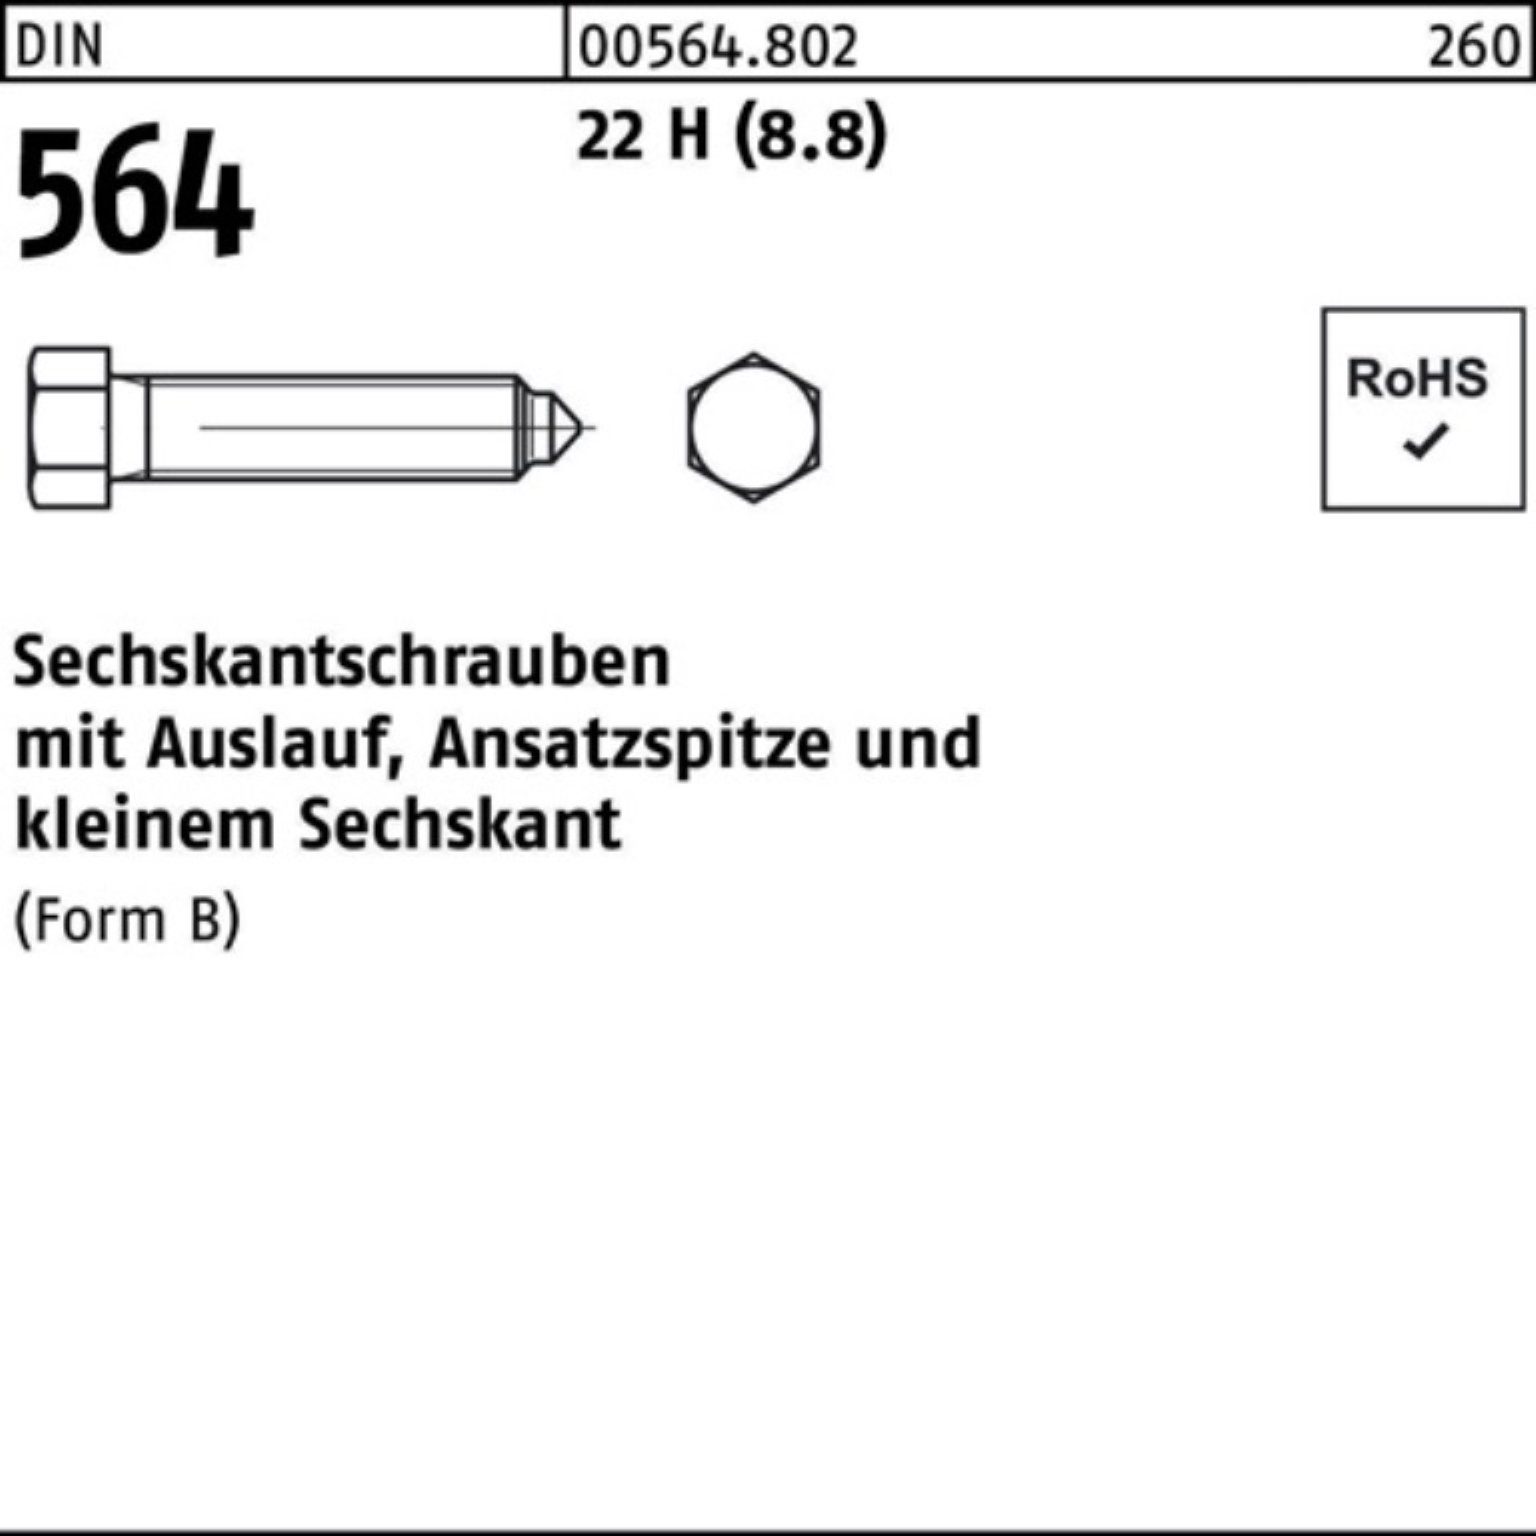 30 Sechskantschraube BM Pack Ansatzspitze/Auslauf 100er DIN Reyher 564 Sechskantschraube 8x 22